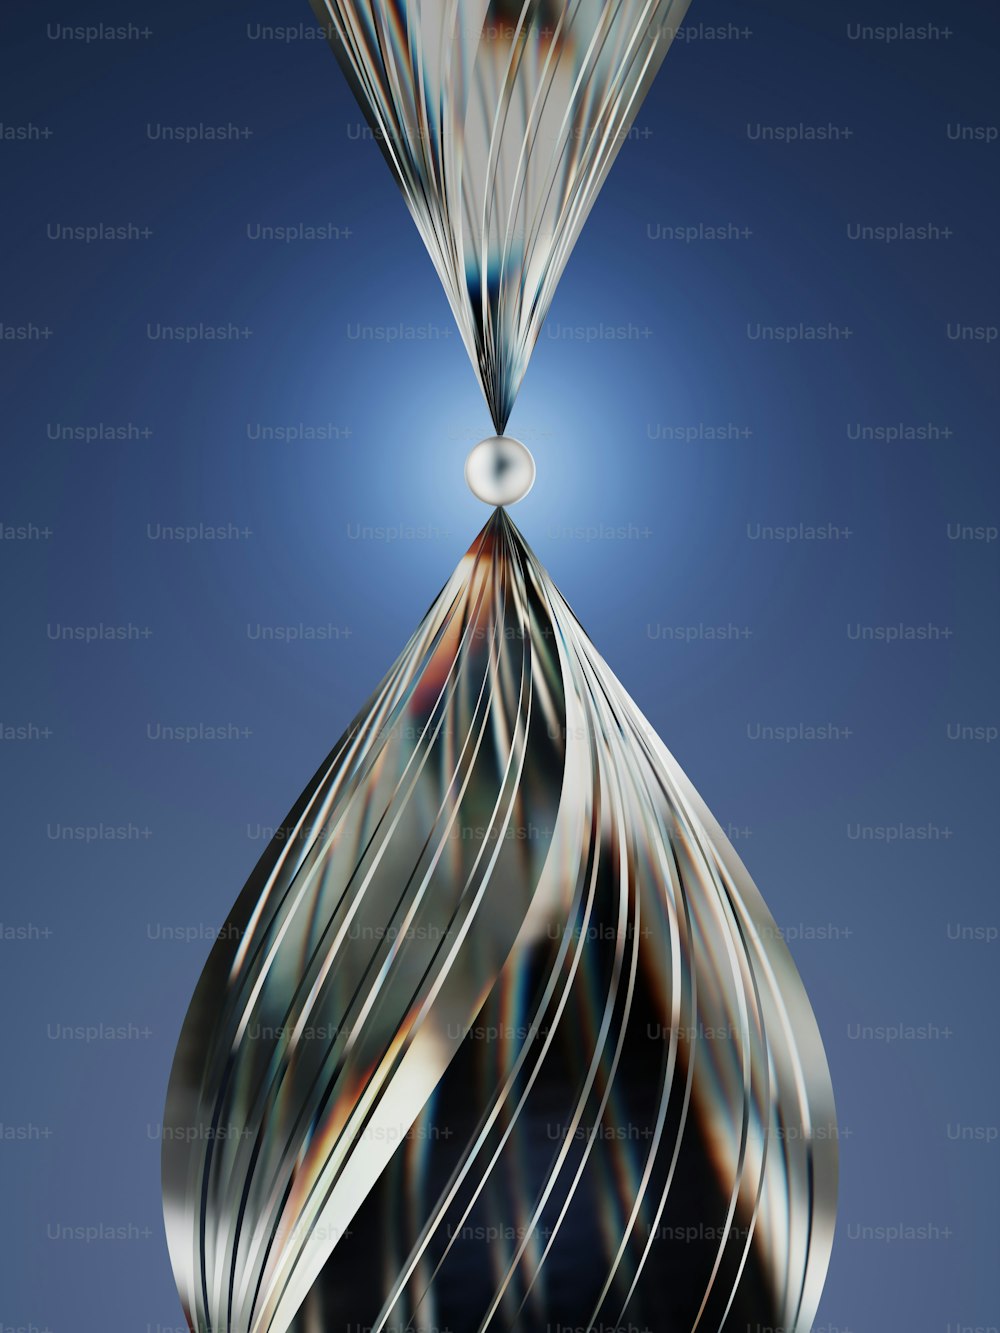 Un'immagine astratta di un oggetto a forma di spirale